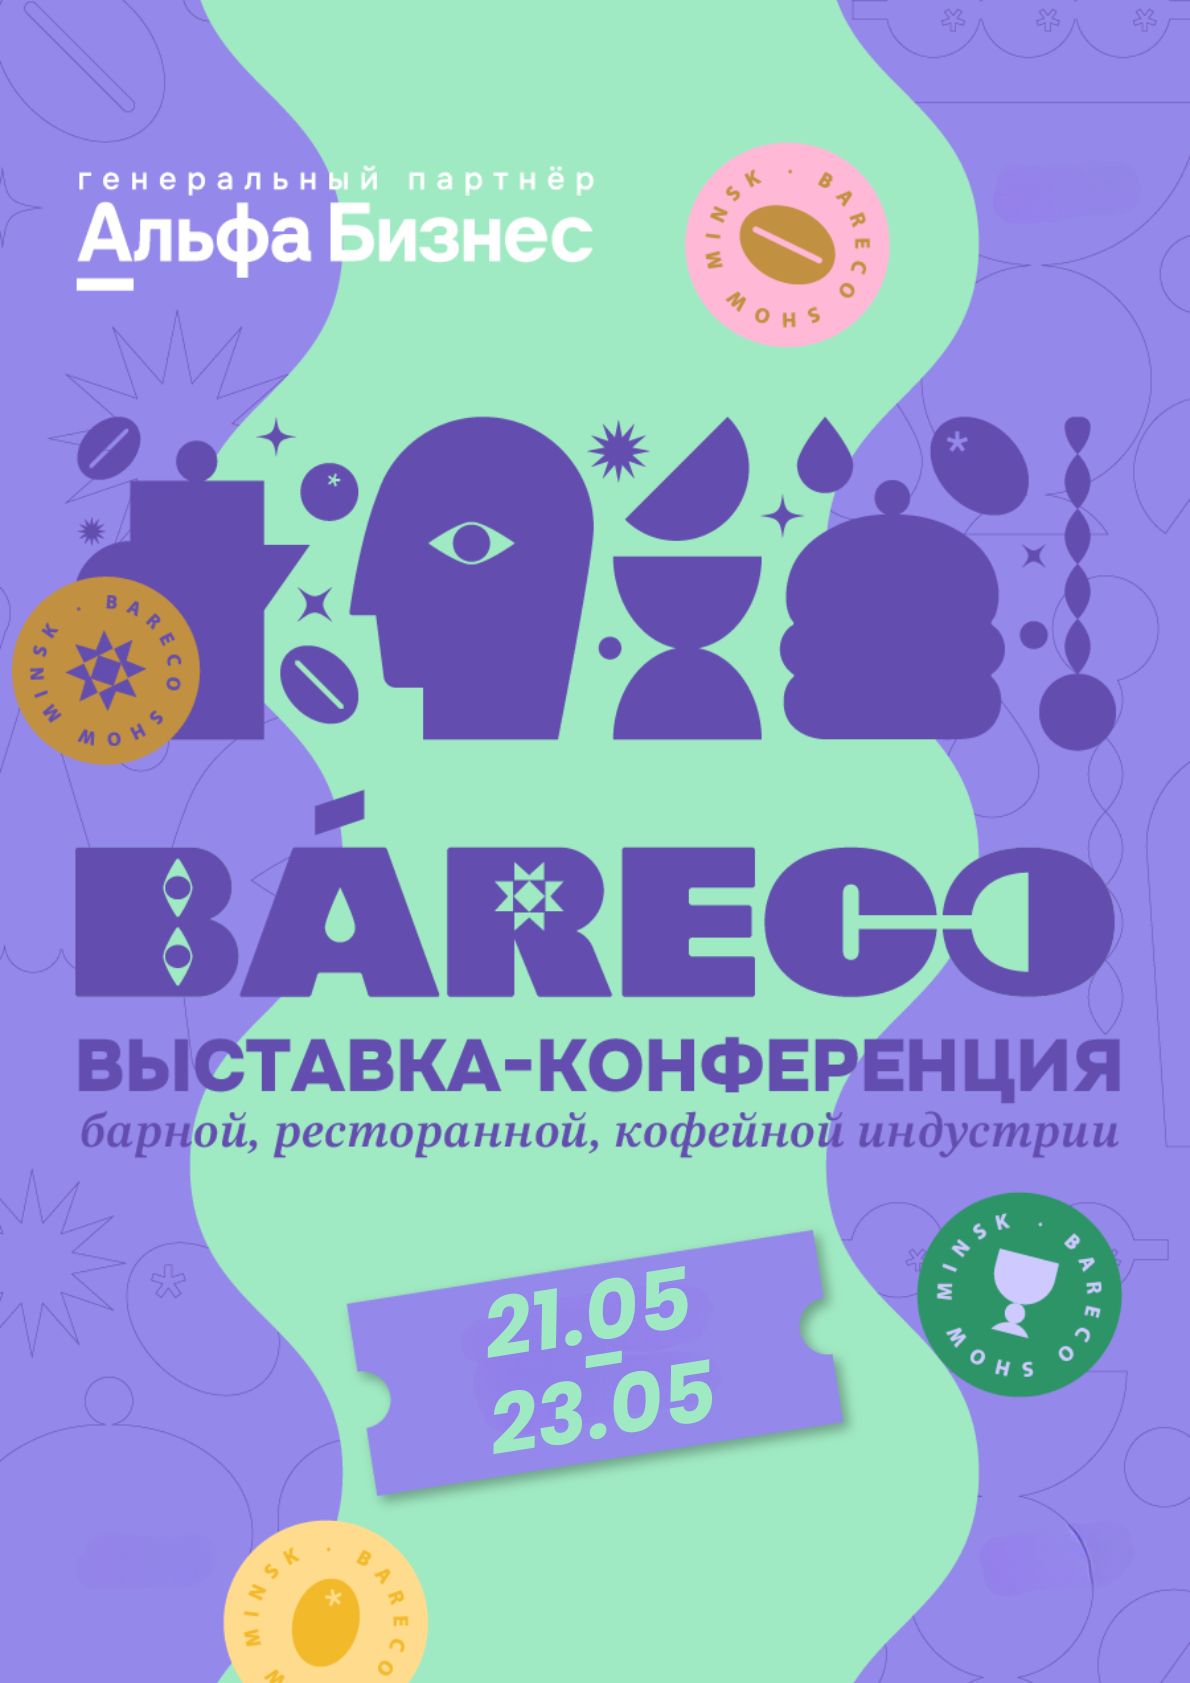 Фото - постер к Музеи и выставки Международная выставка-конференция барной, ресторанной и кофейной индустрии BARECO Show Minsk на kudapoiti.by